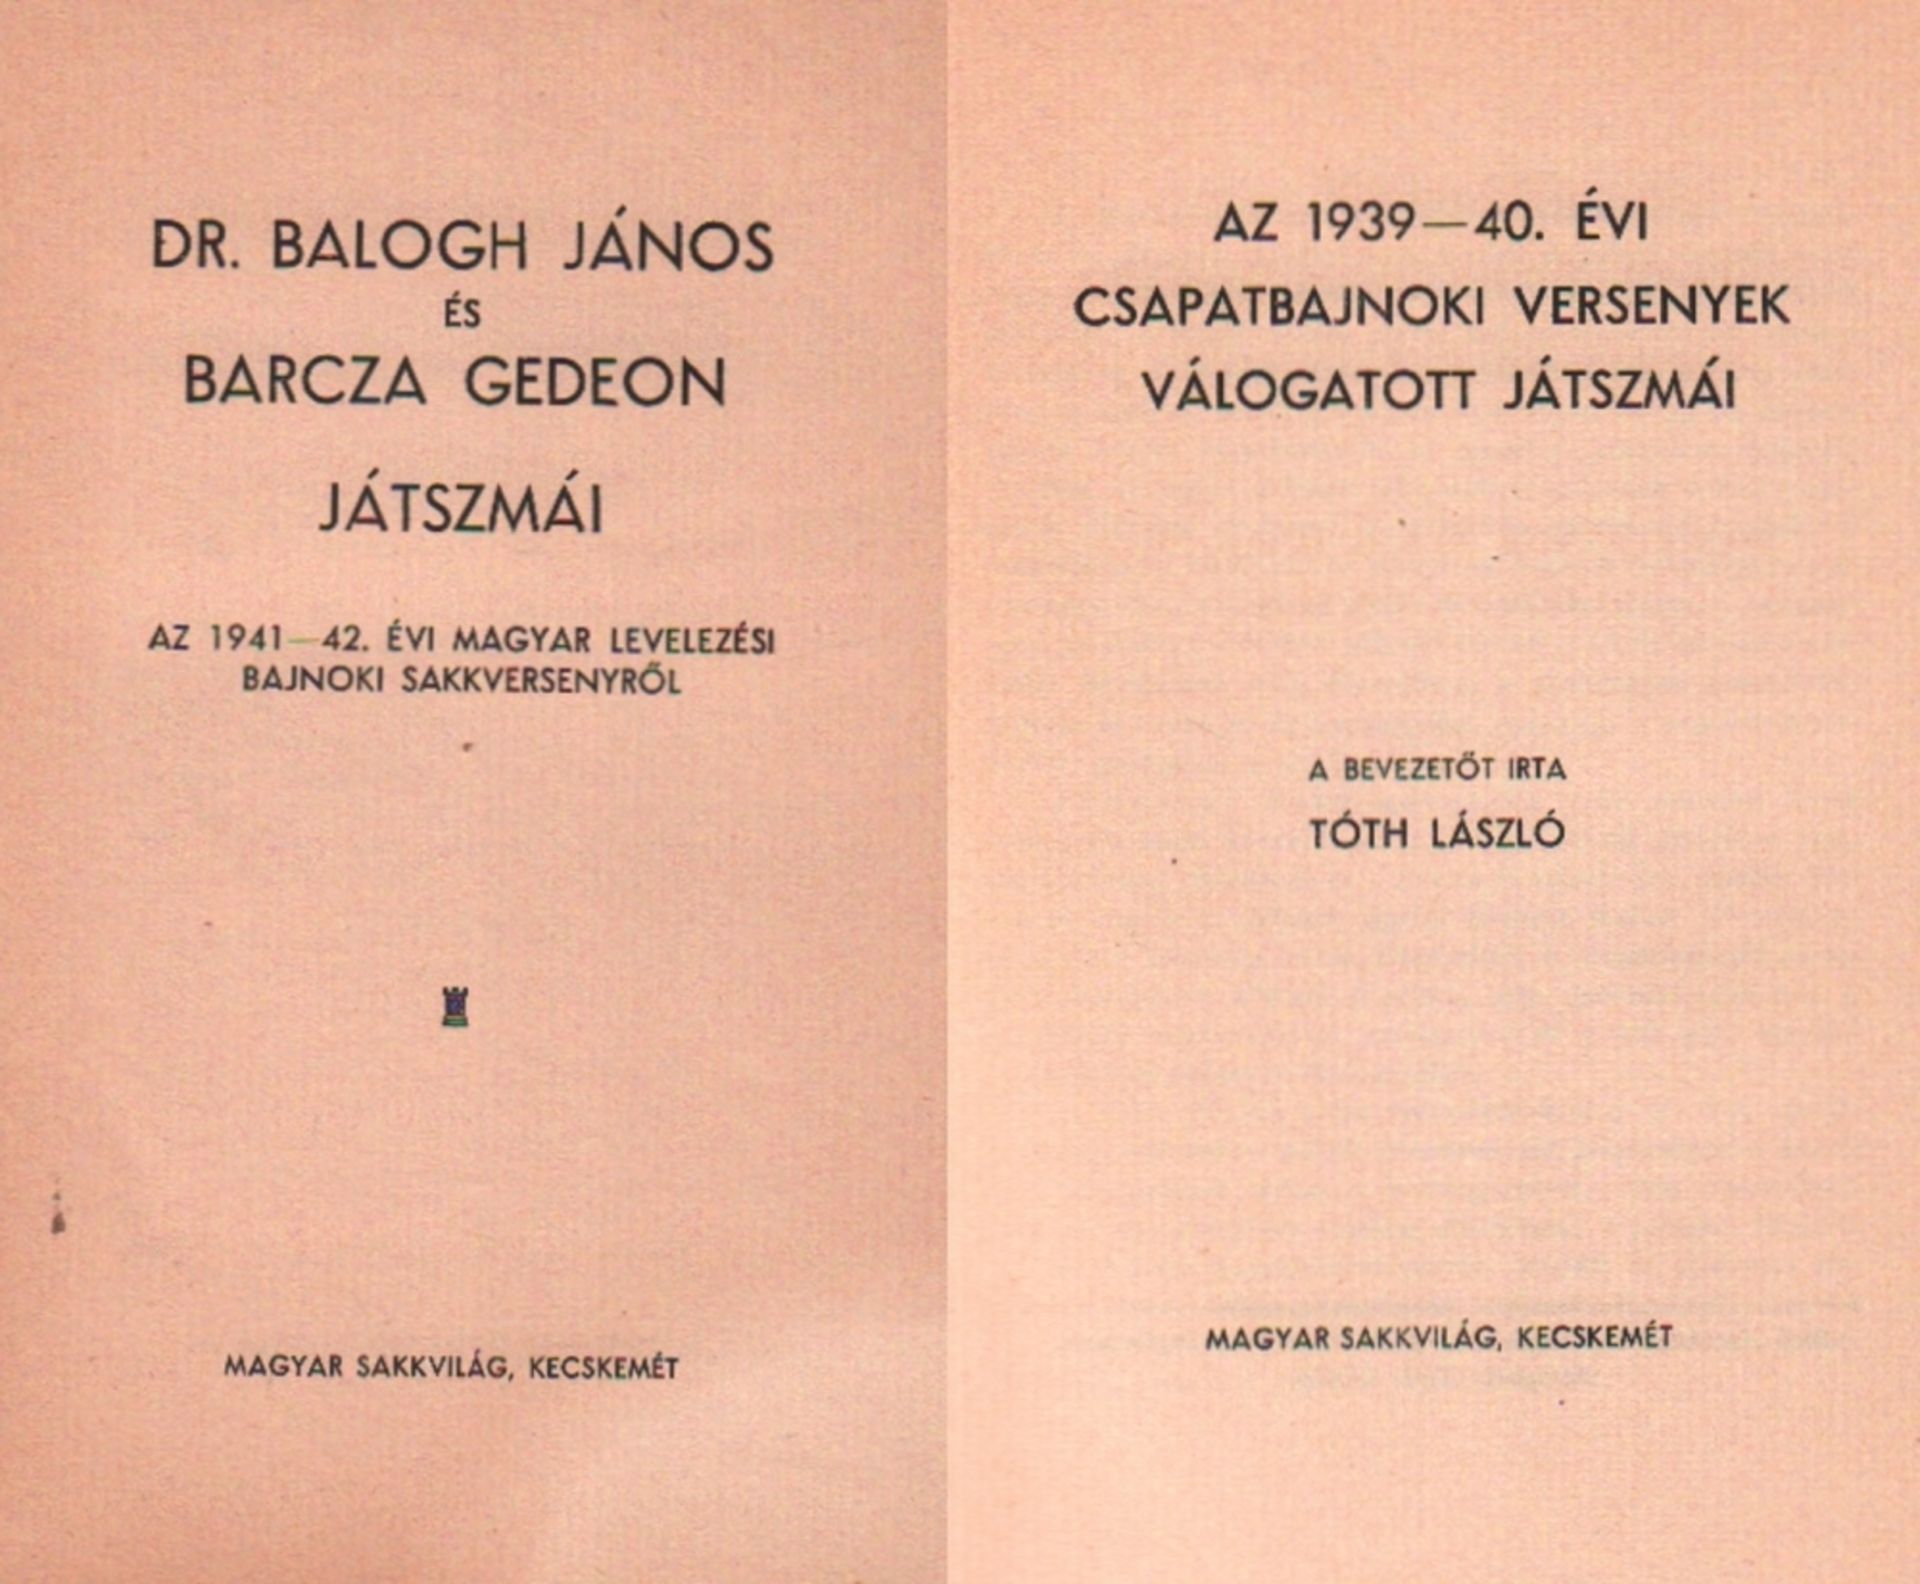 Balogh und Barcza. Dr. Balogh János és Barcza Gedeon játszmái. Az 1941 - 42. évi Magyar levelezési